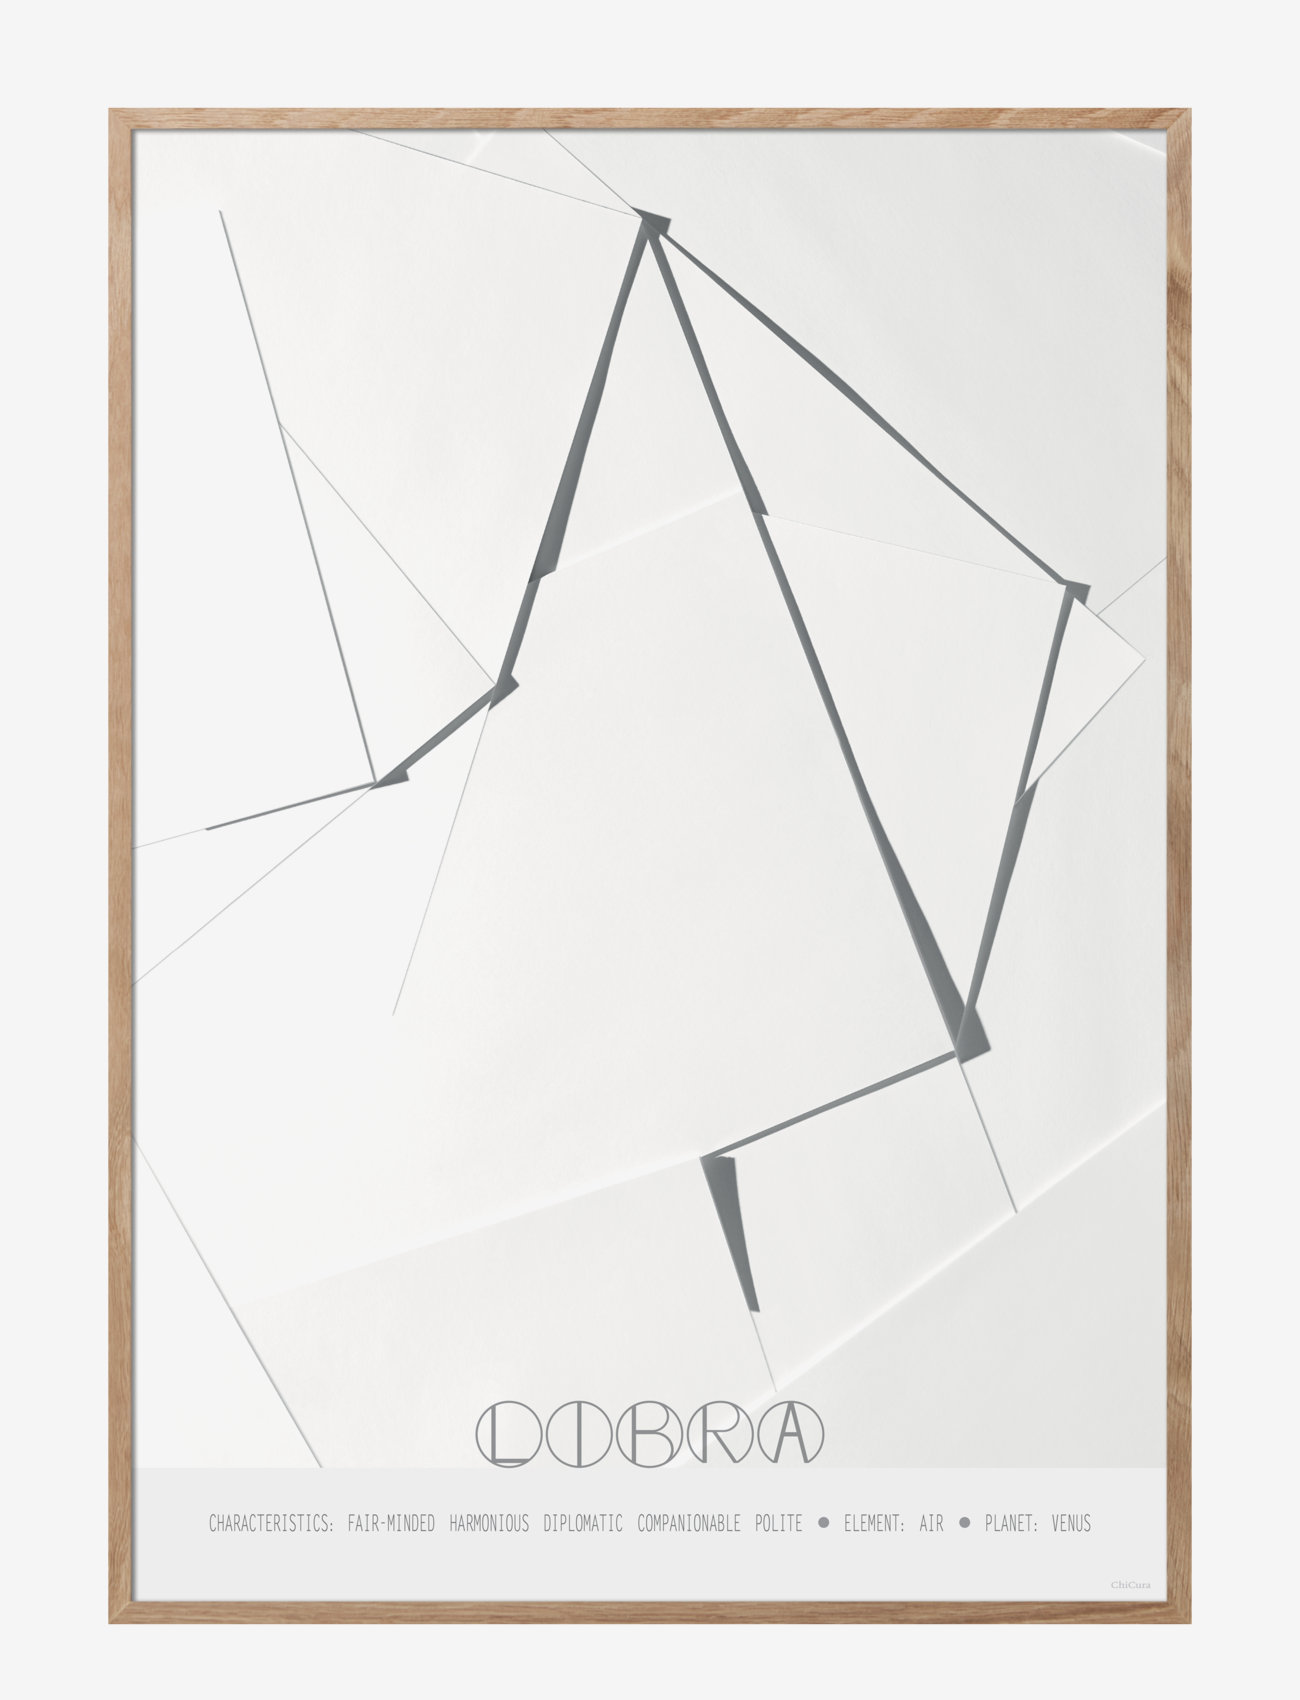 ChiCura - Libra - The Scales - mažiausios kainos - multiple color - 0